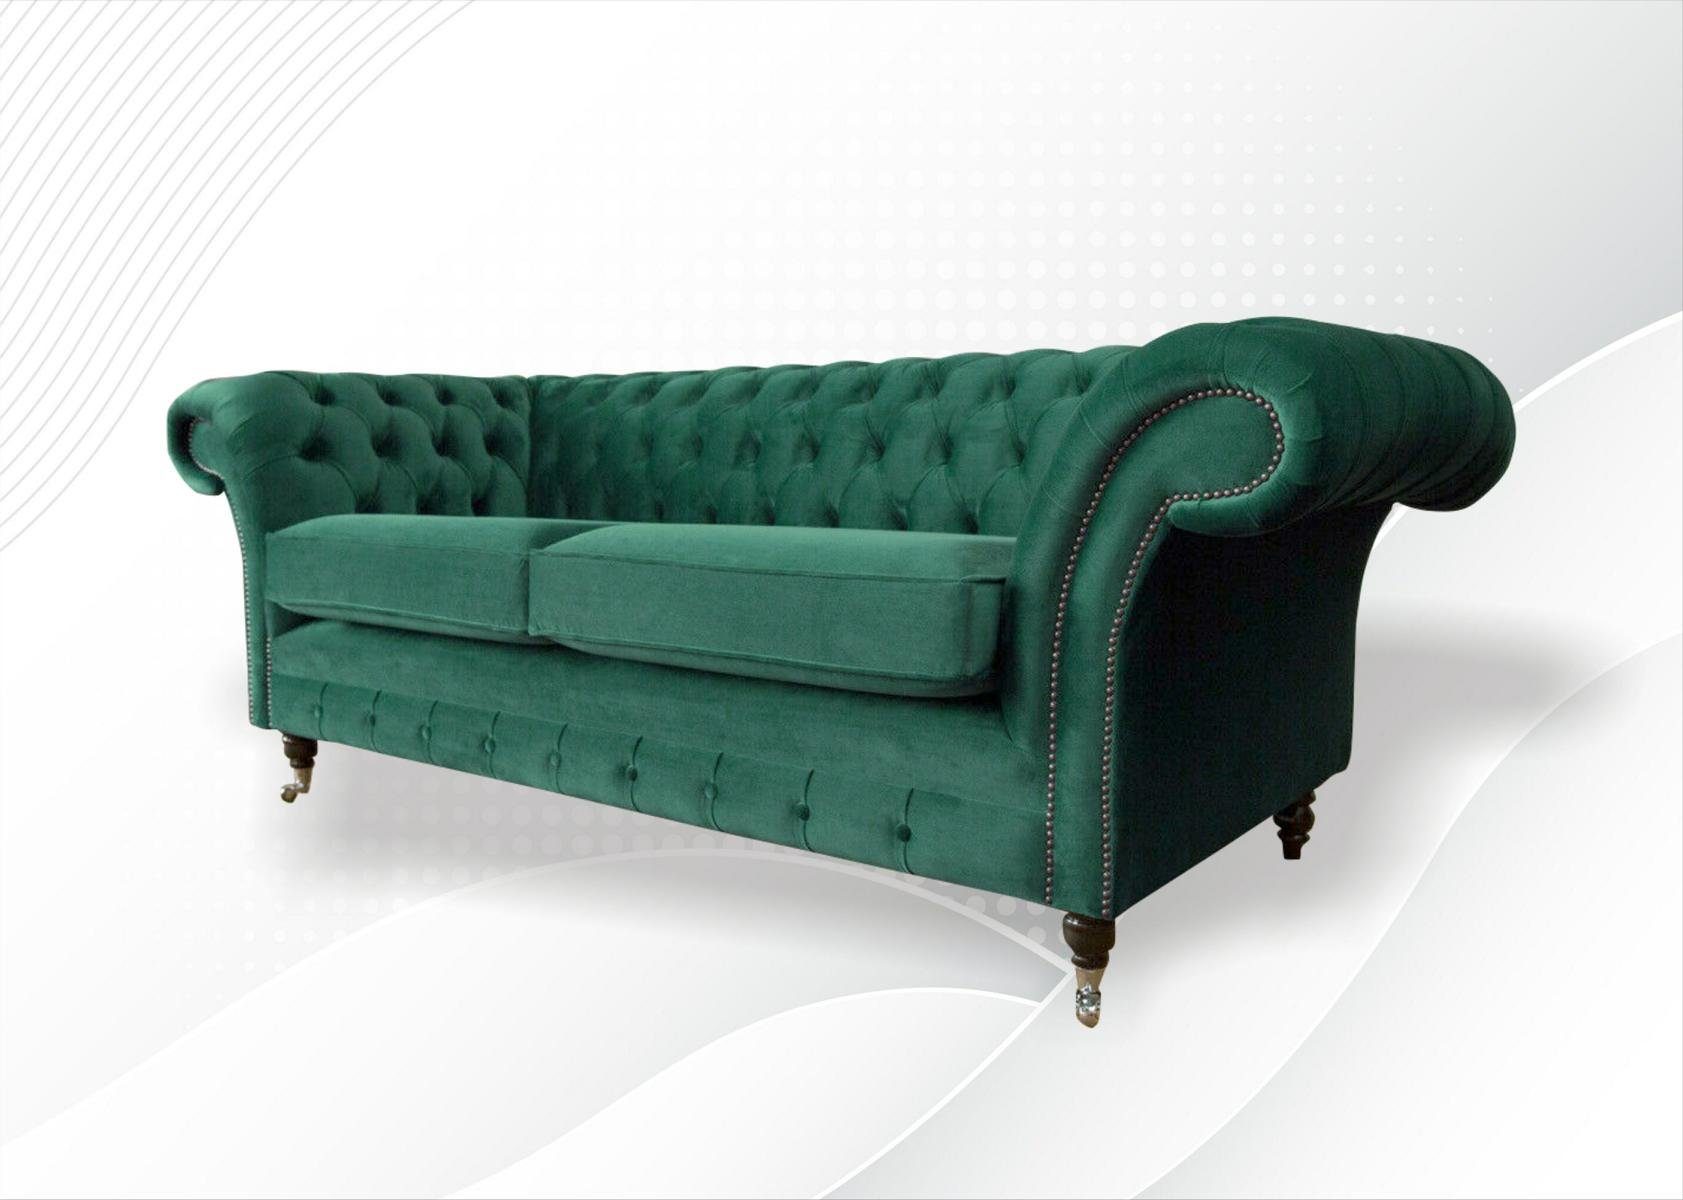 Made Moderner Neu Europe in Chesterfield-Sofa Luxus Möbel grüner 3-er Dreisitzer JVmoebel Polstermöbel,